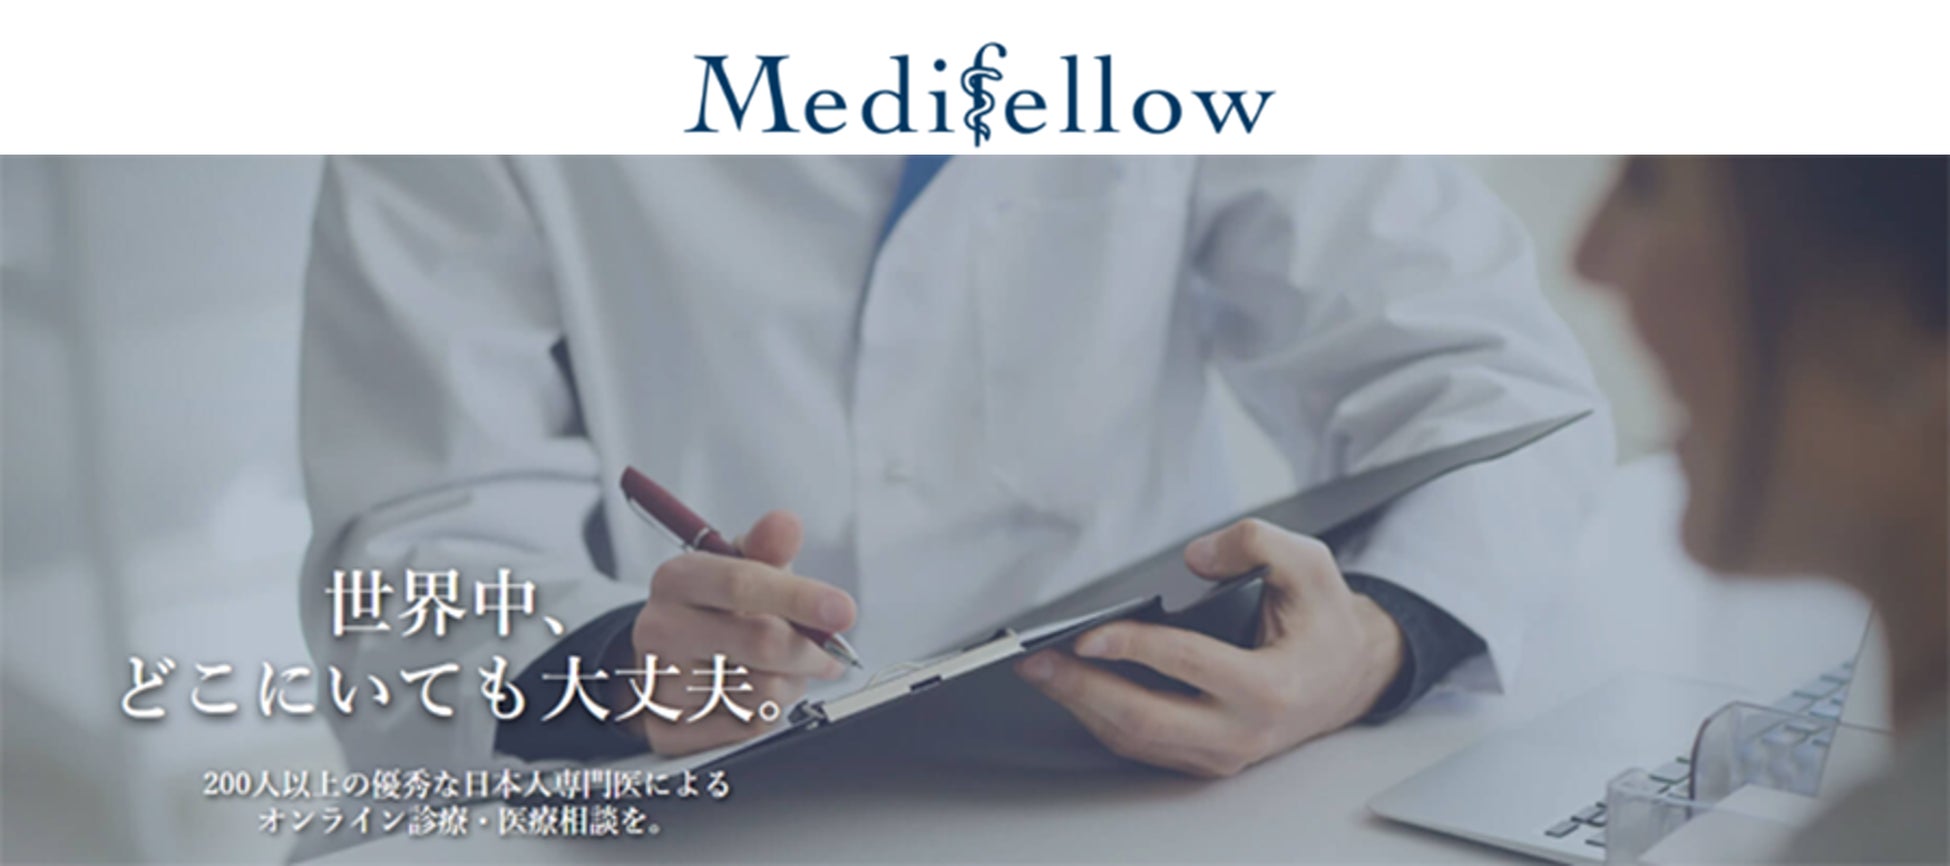 オンライン診療・医療相談サービスを提供する「Medifellow」に出資